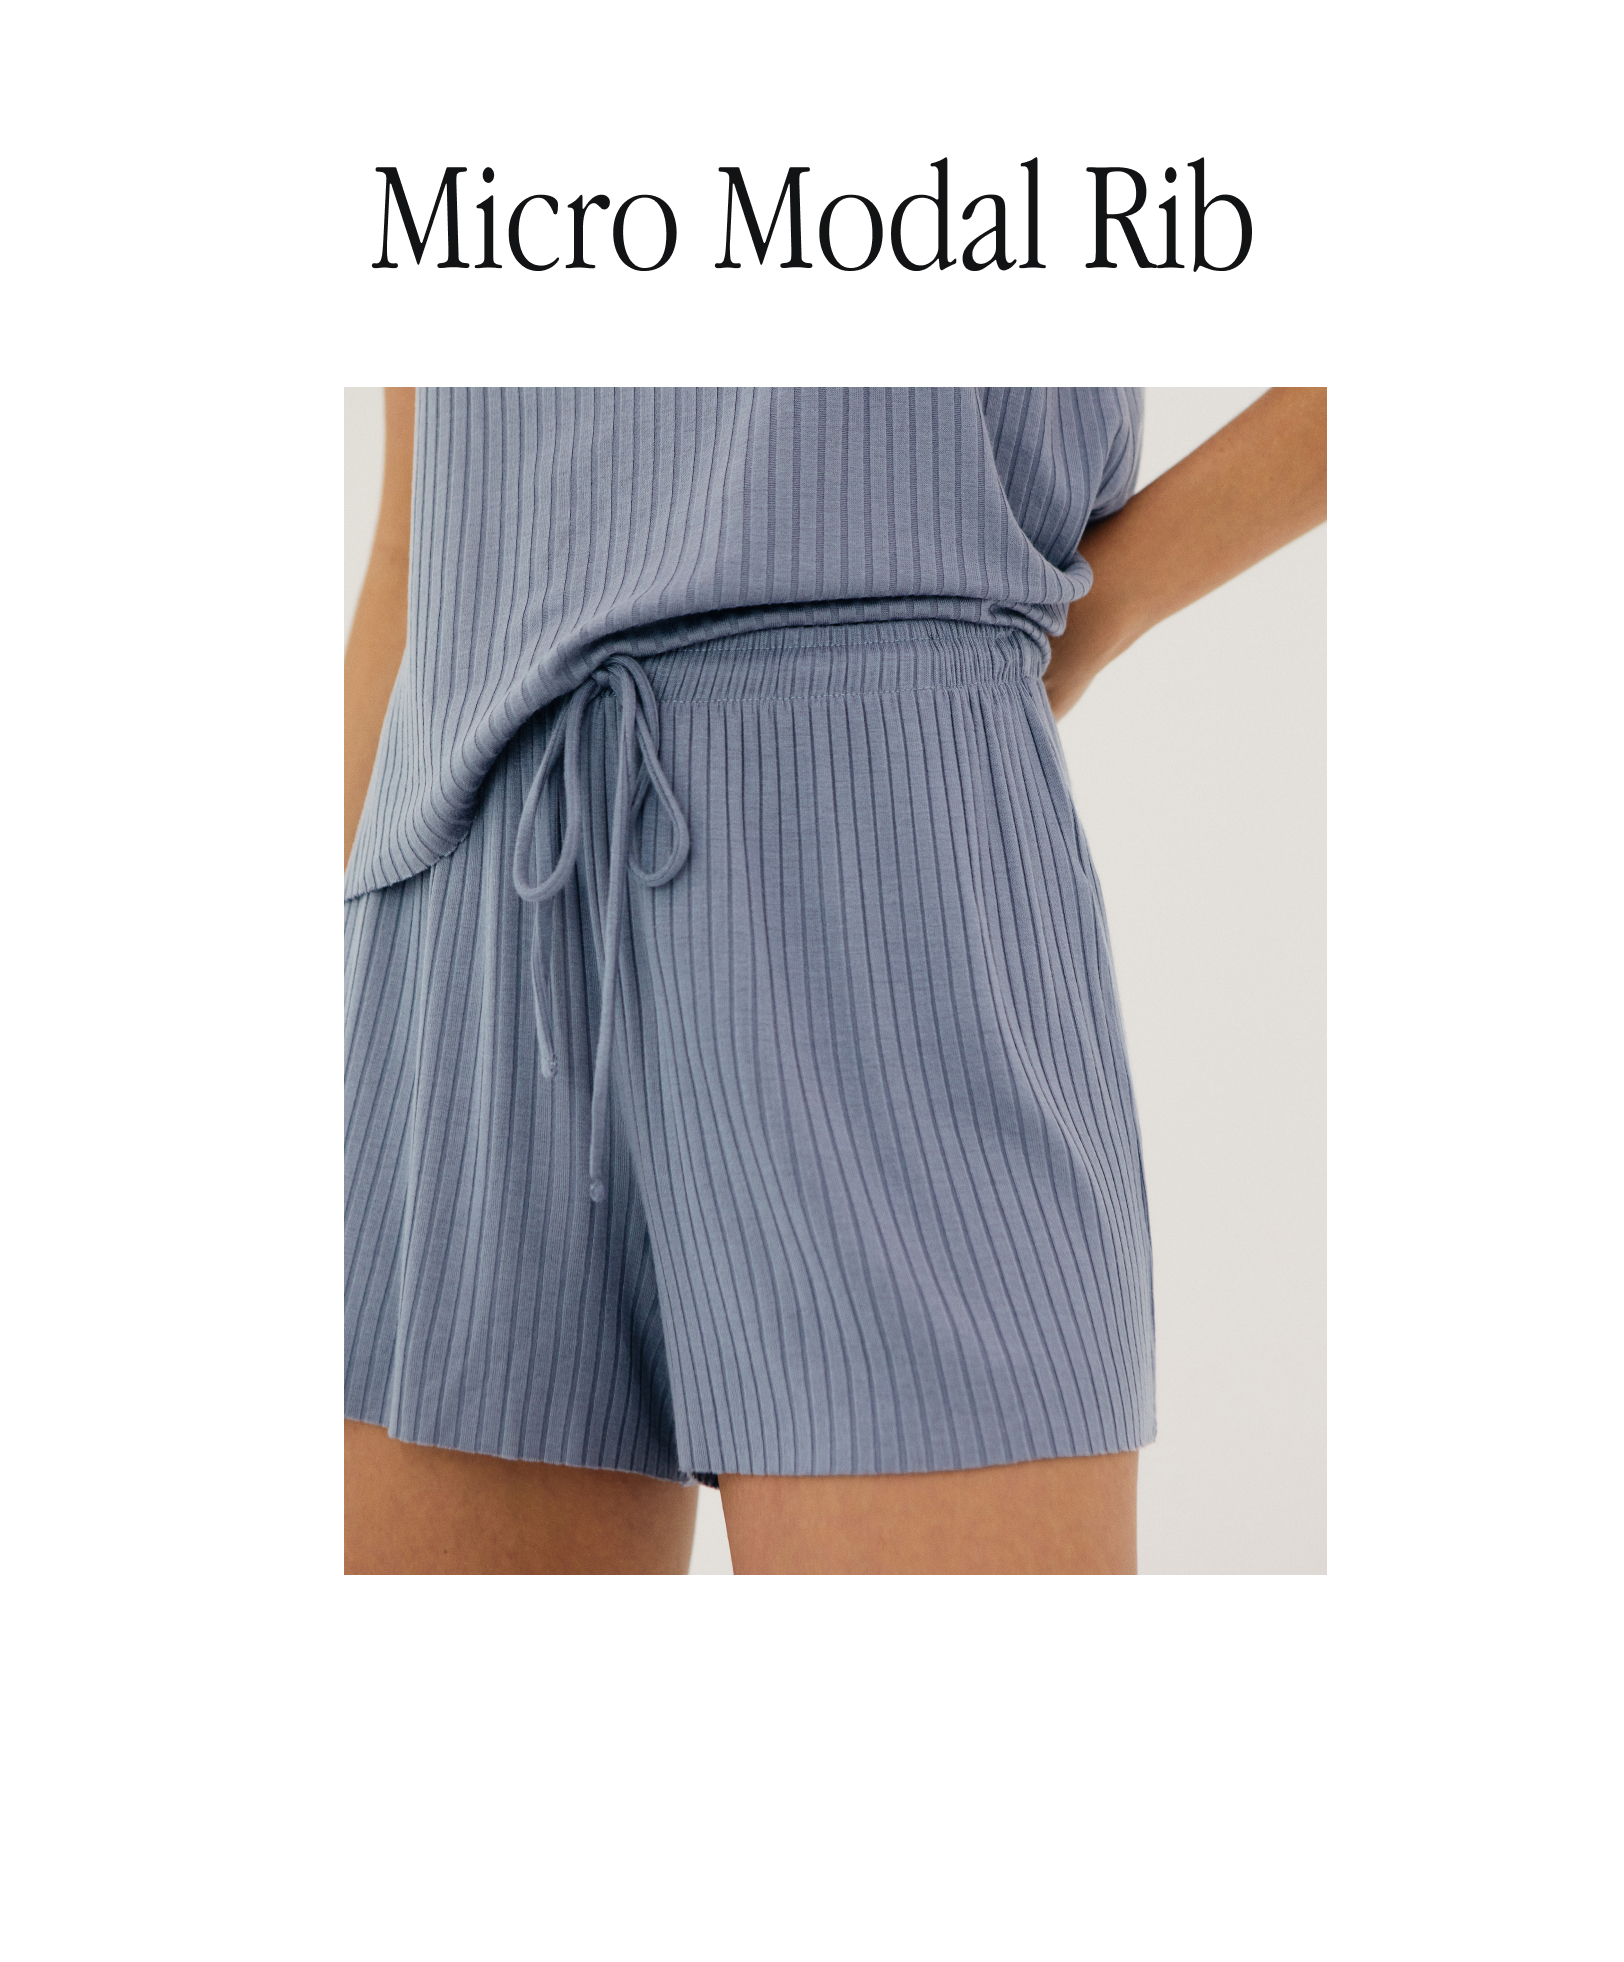 Ribbed micromodal shorts